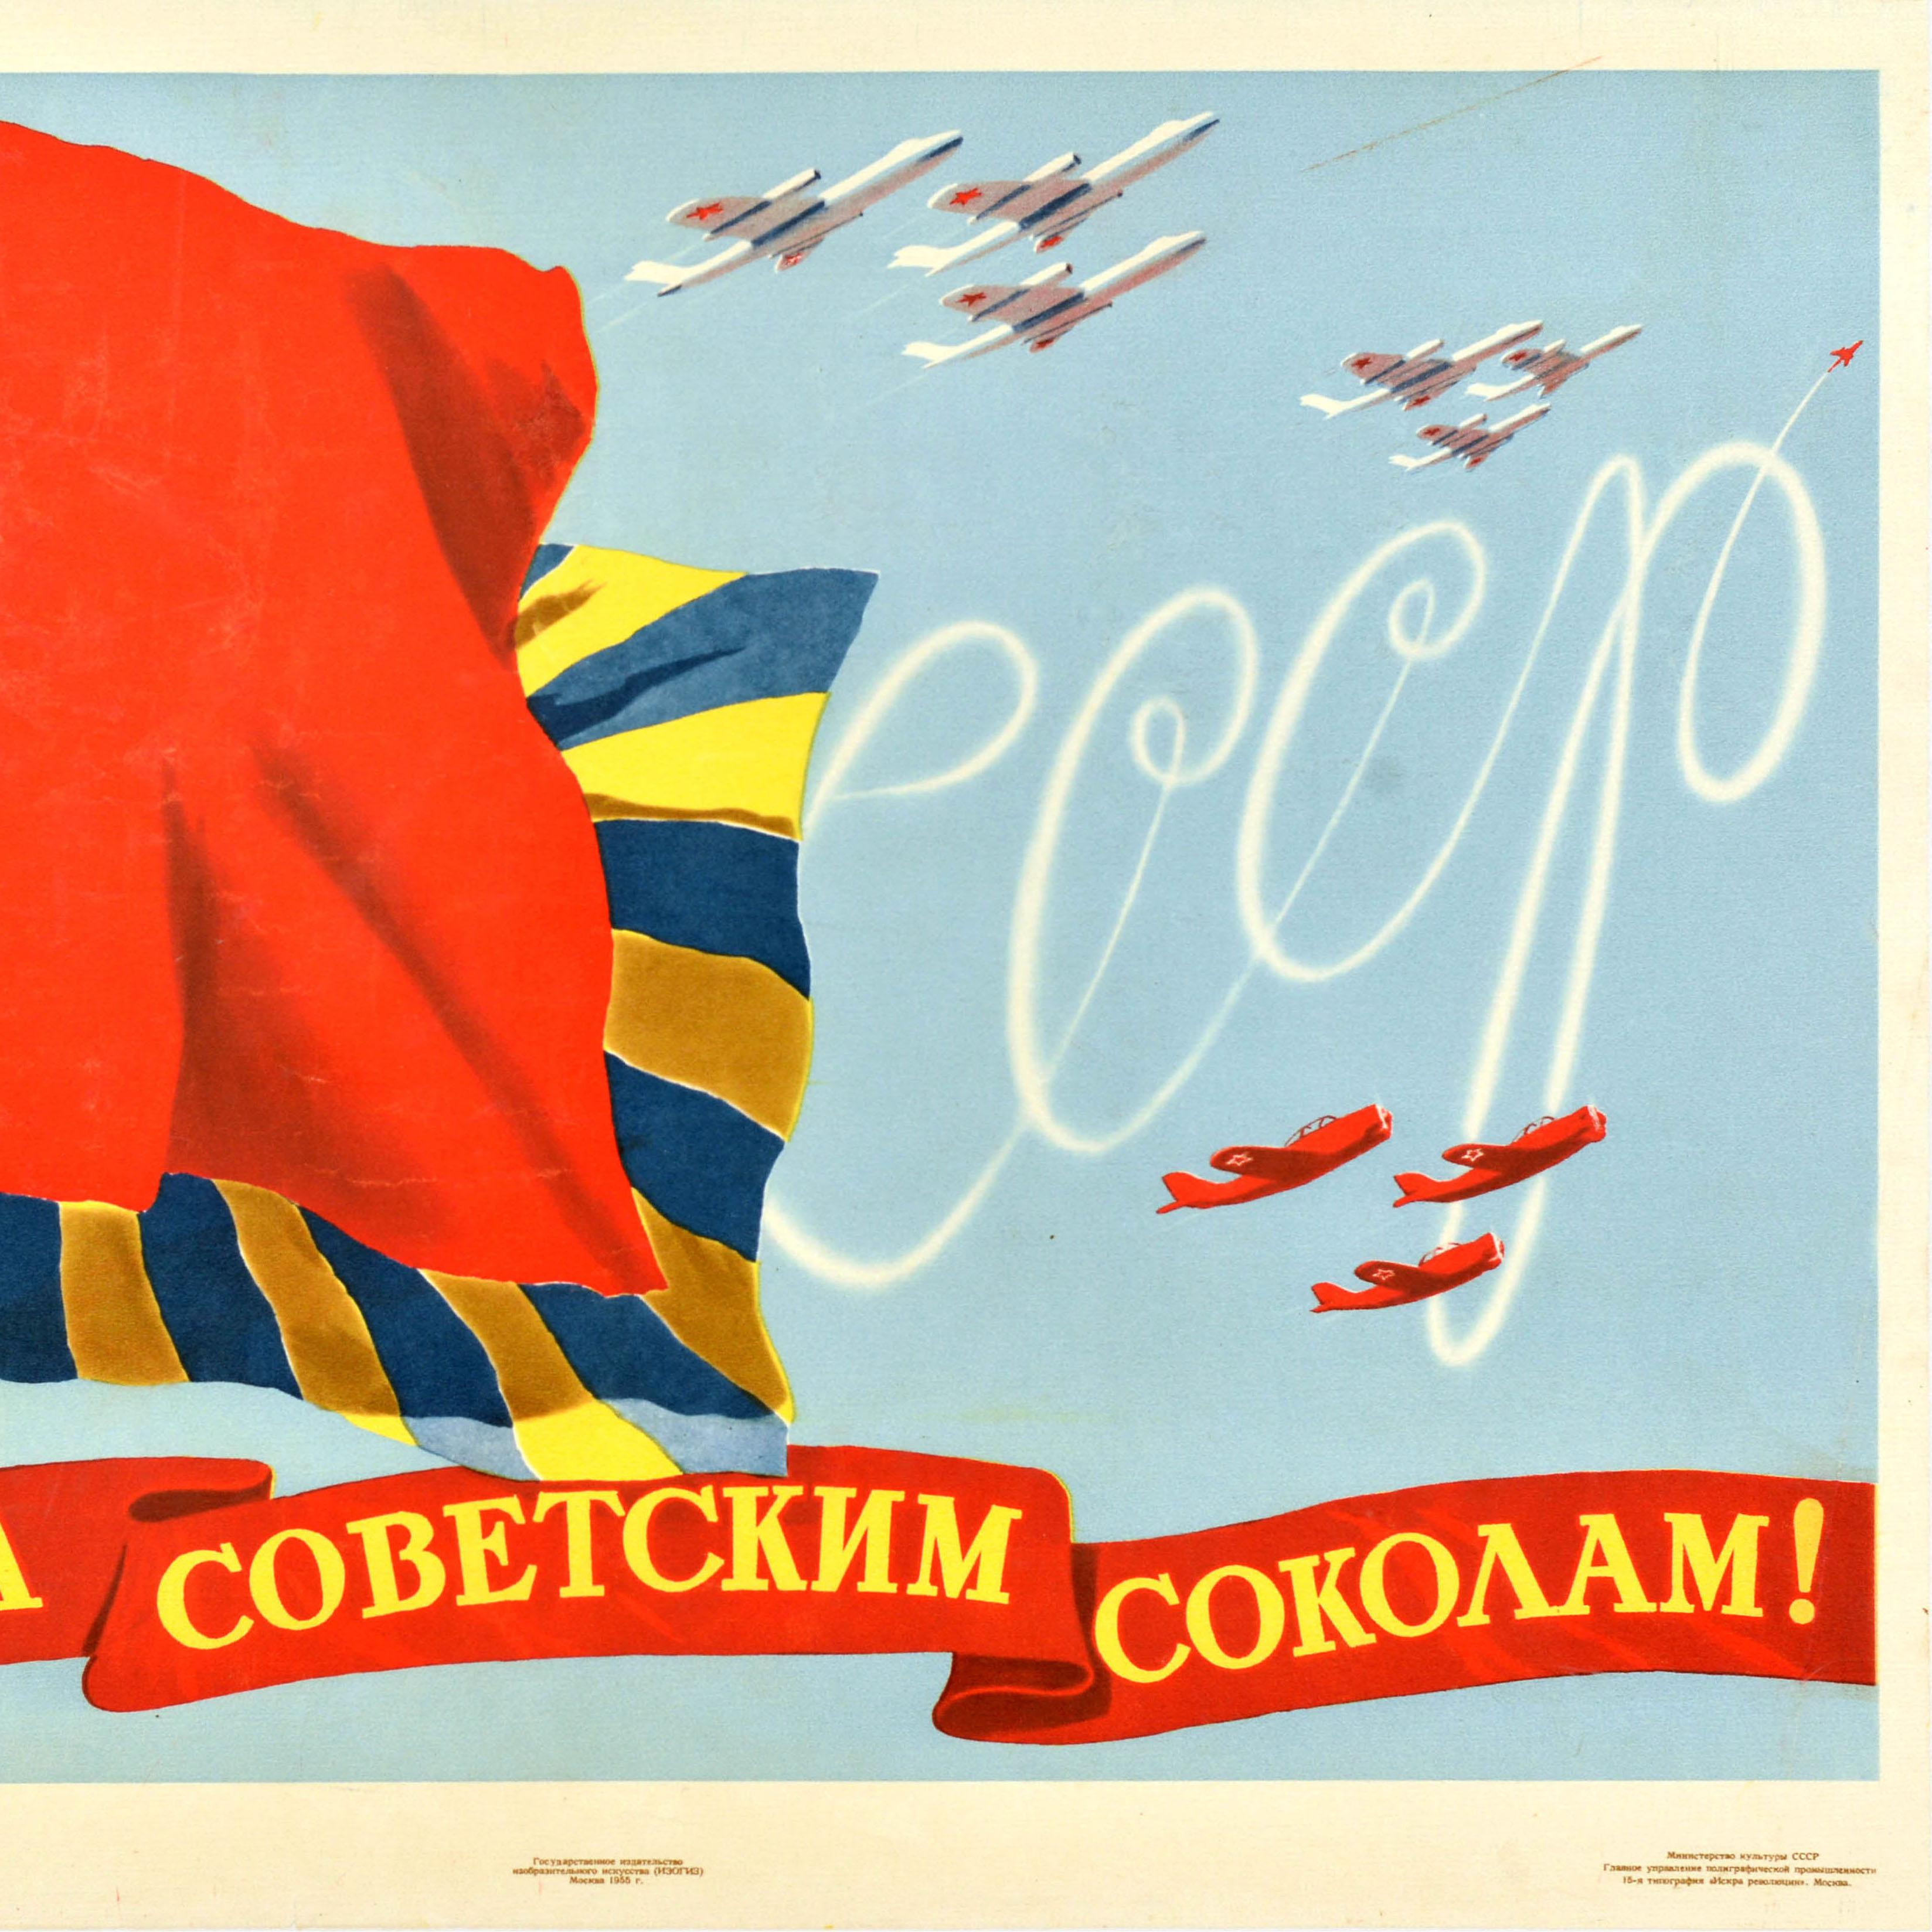 Originales sowjetisches Propagandaposter für die Luftfahrt - Слава Советским Соколам! / Ruhm den sowjetischen Falken - mit einer dynamischen militärischen Illustration der roten Hammer-und-Sichel-Flagge und der Flagge der sowjetischen